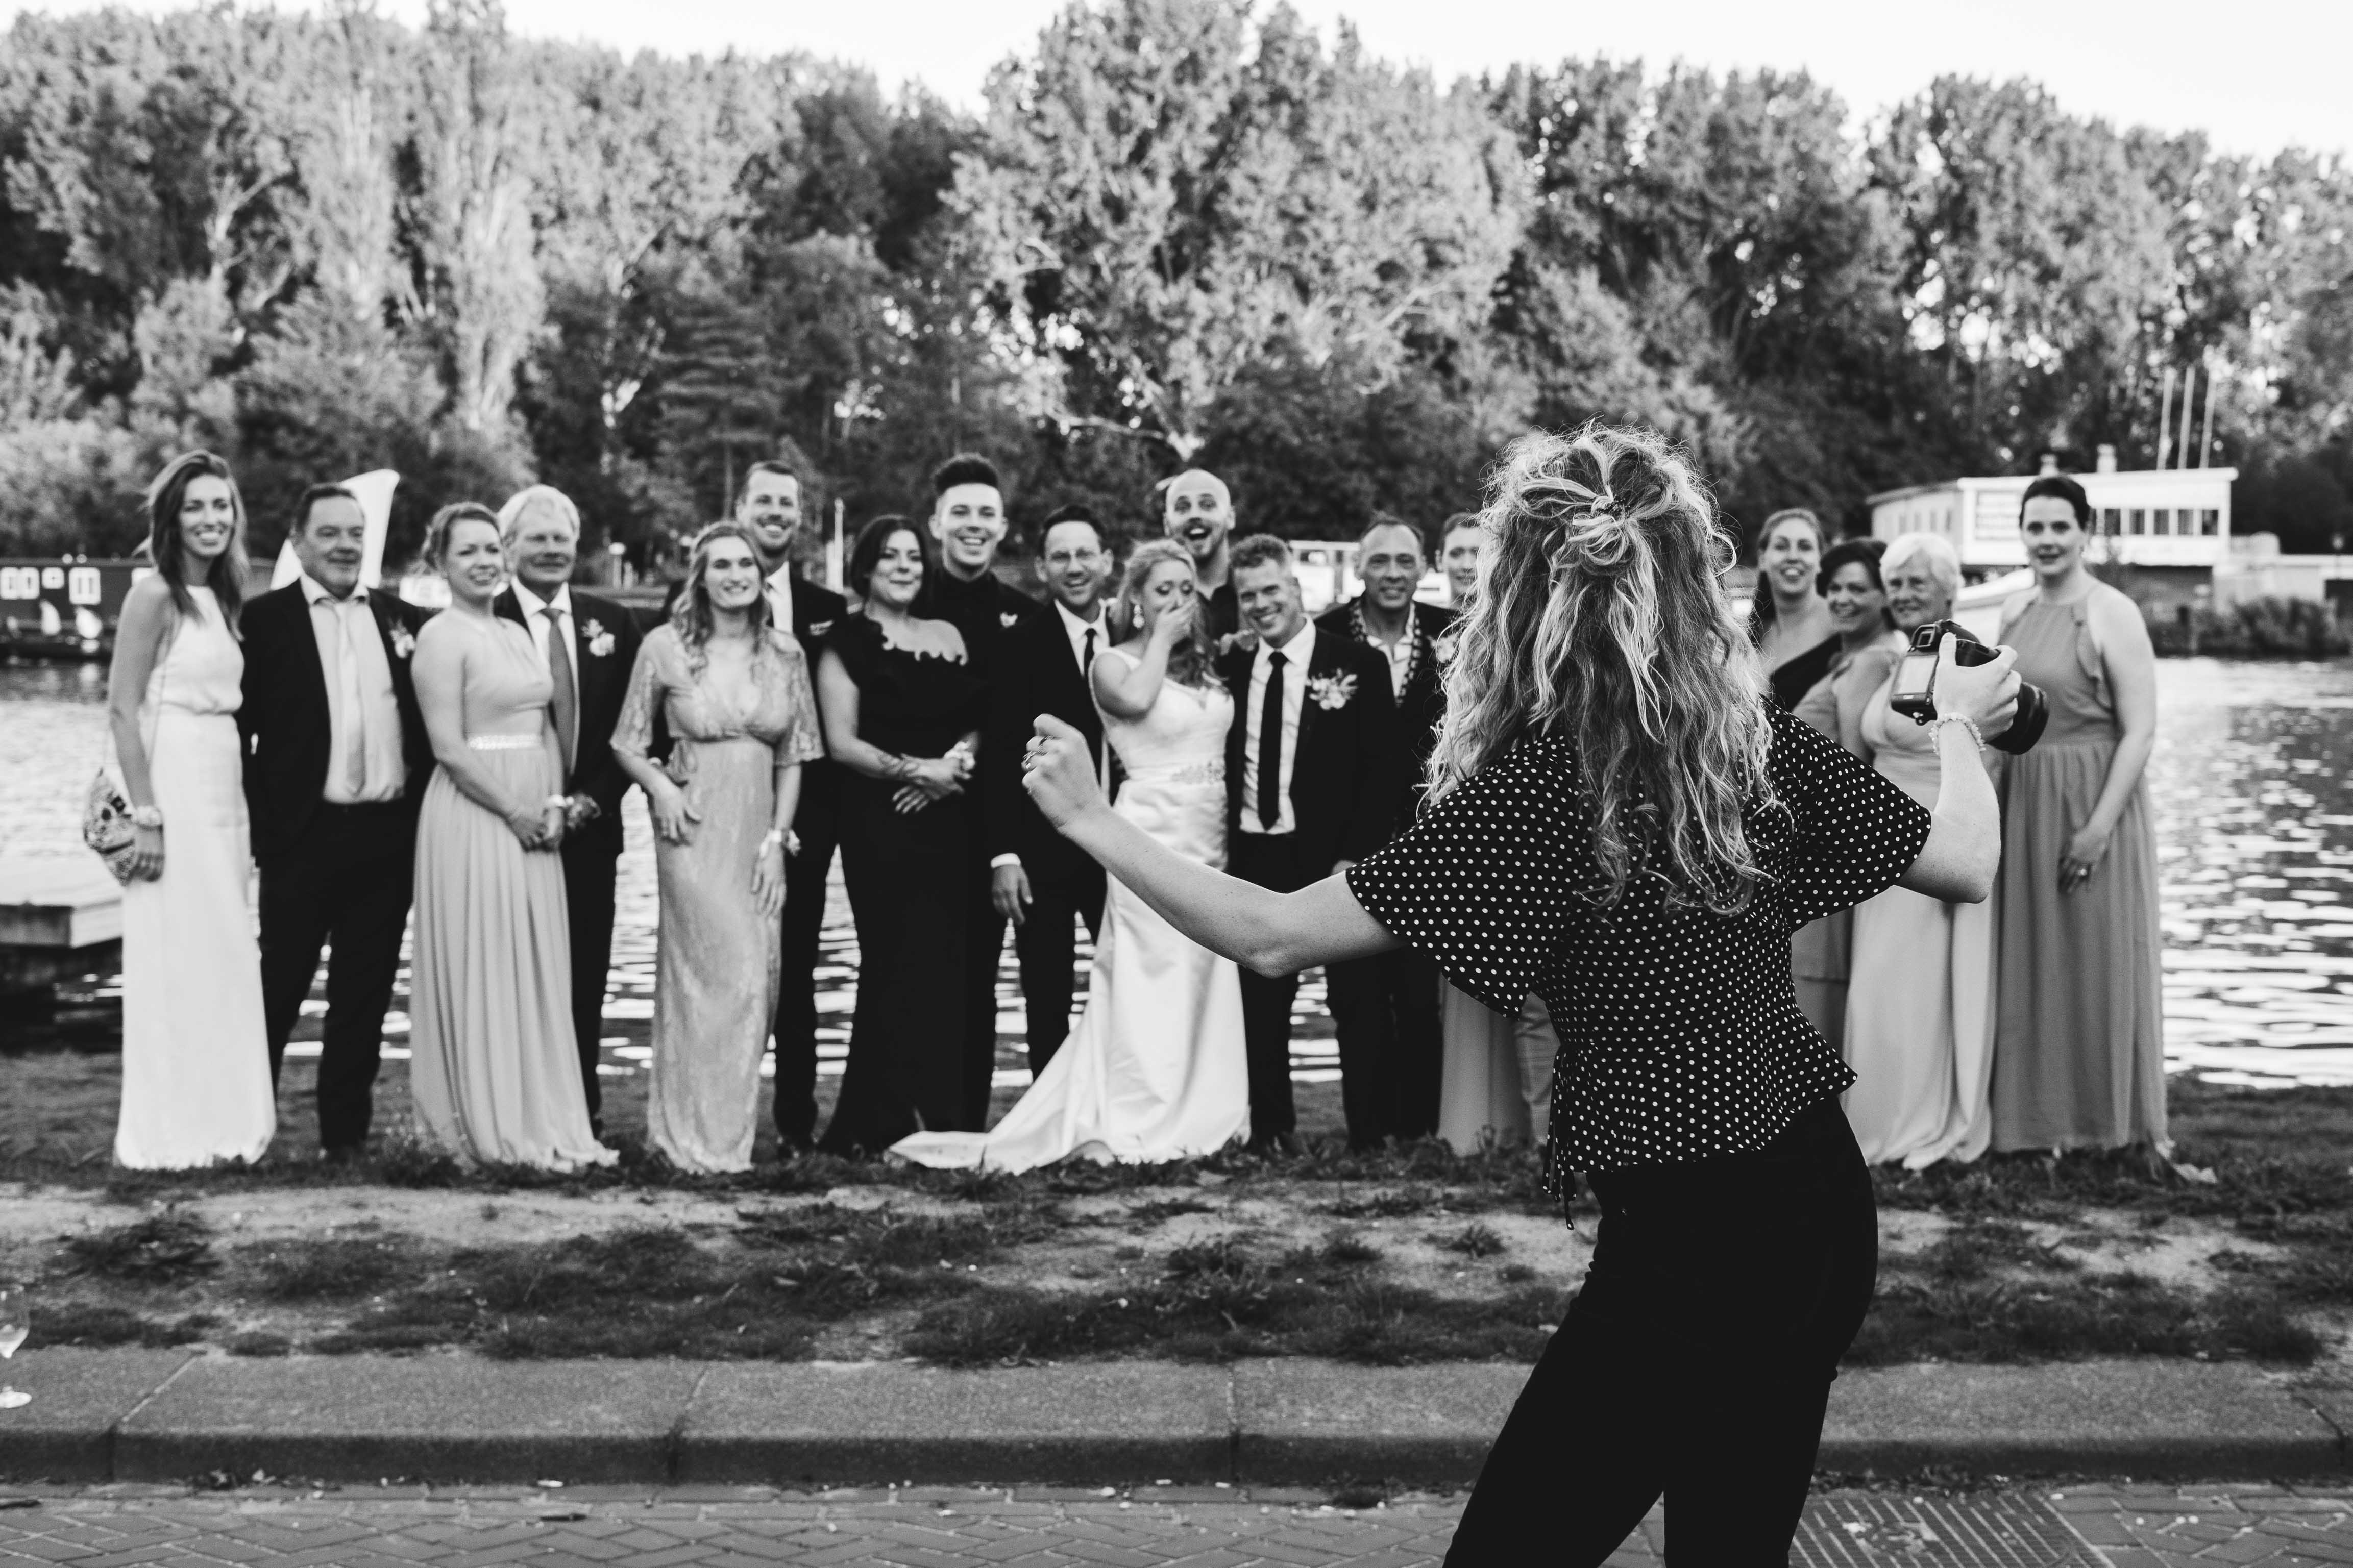 Yara Photography geeft instructies aan een groep mensen voor een groepsfoto. De mensen, allemaal in pak en jurk gekleed, staan voor het water bij elkaar om samen op de foto te gaan.